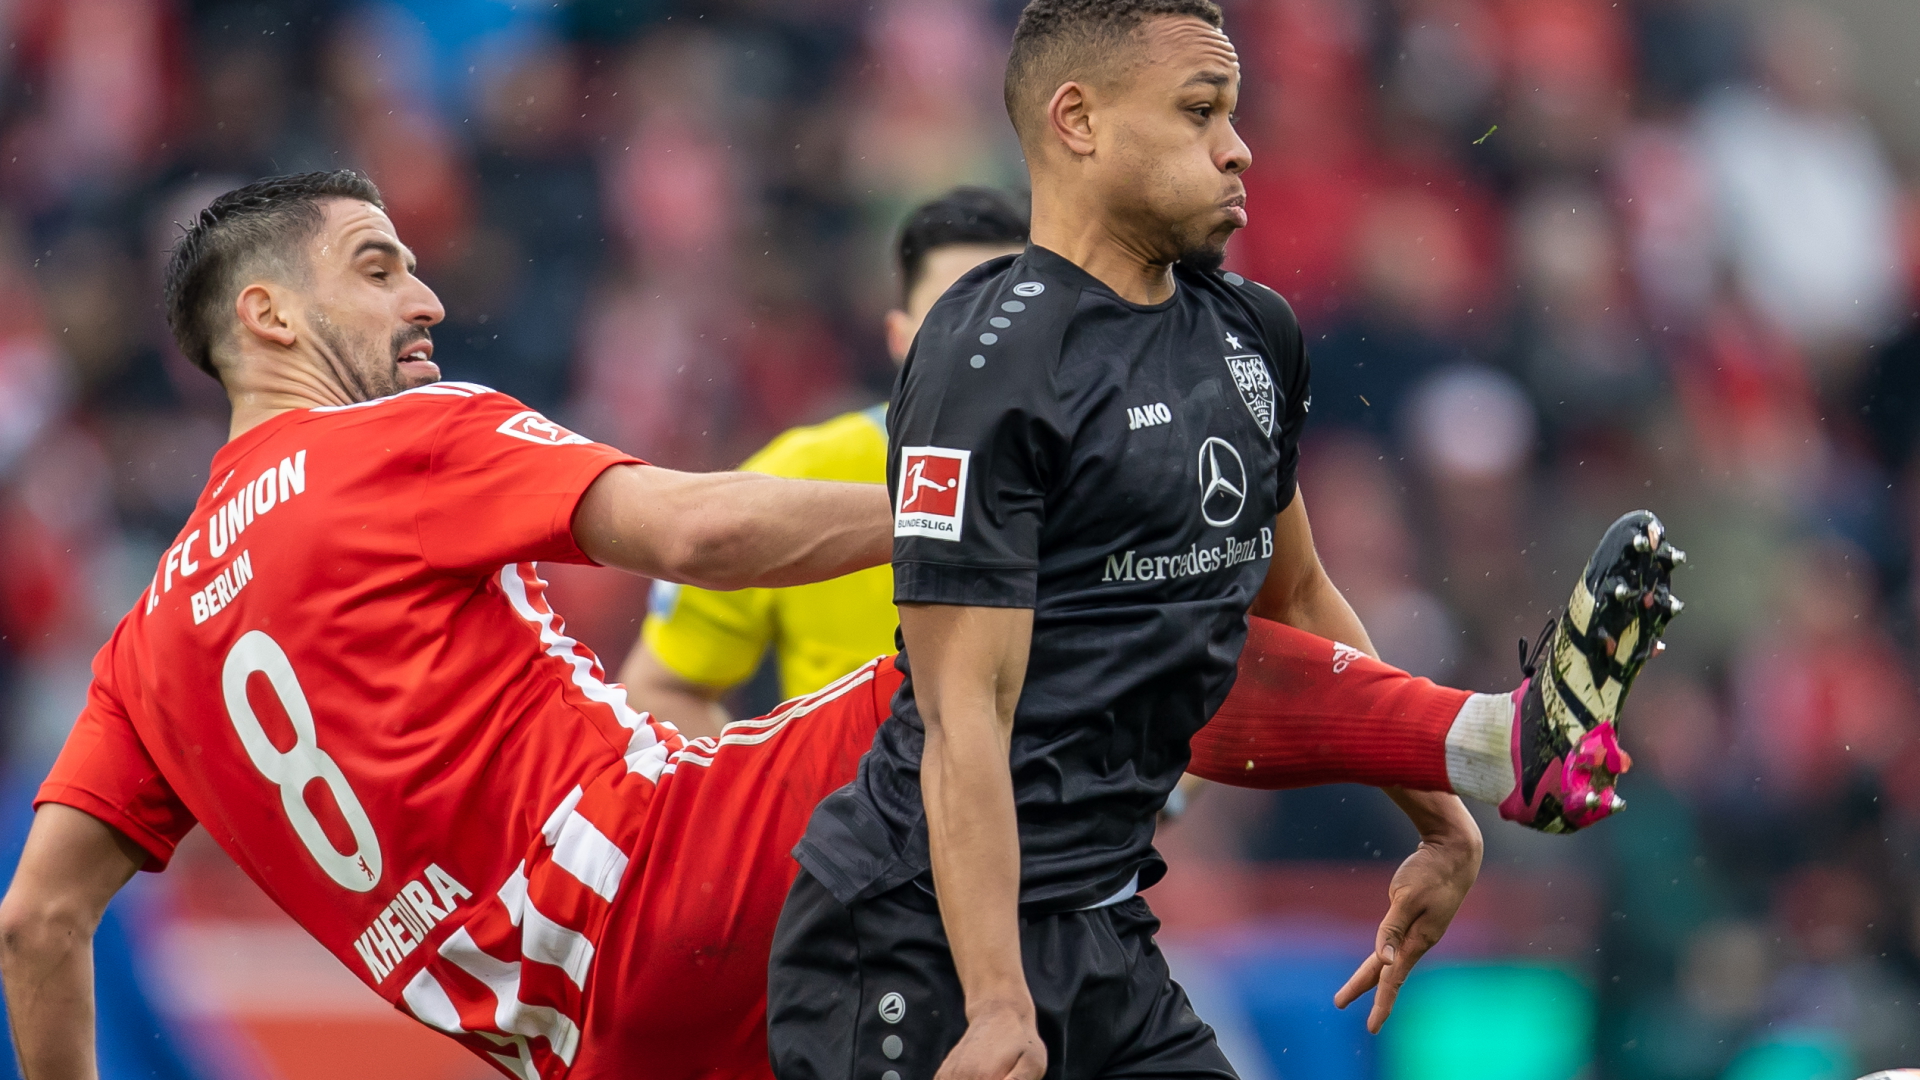 Rani Khedira von Union Berlin (links) kämpft gegen Nikolas Nartey vom VfB Stuttgart um den Ball. | dpa